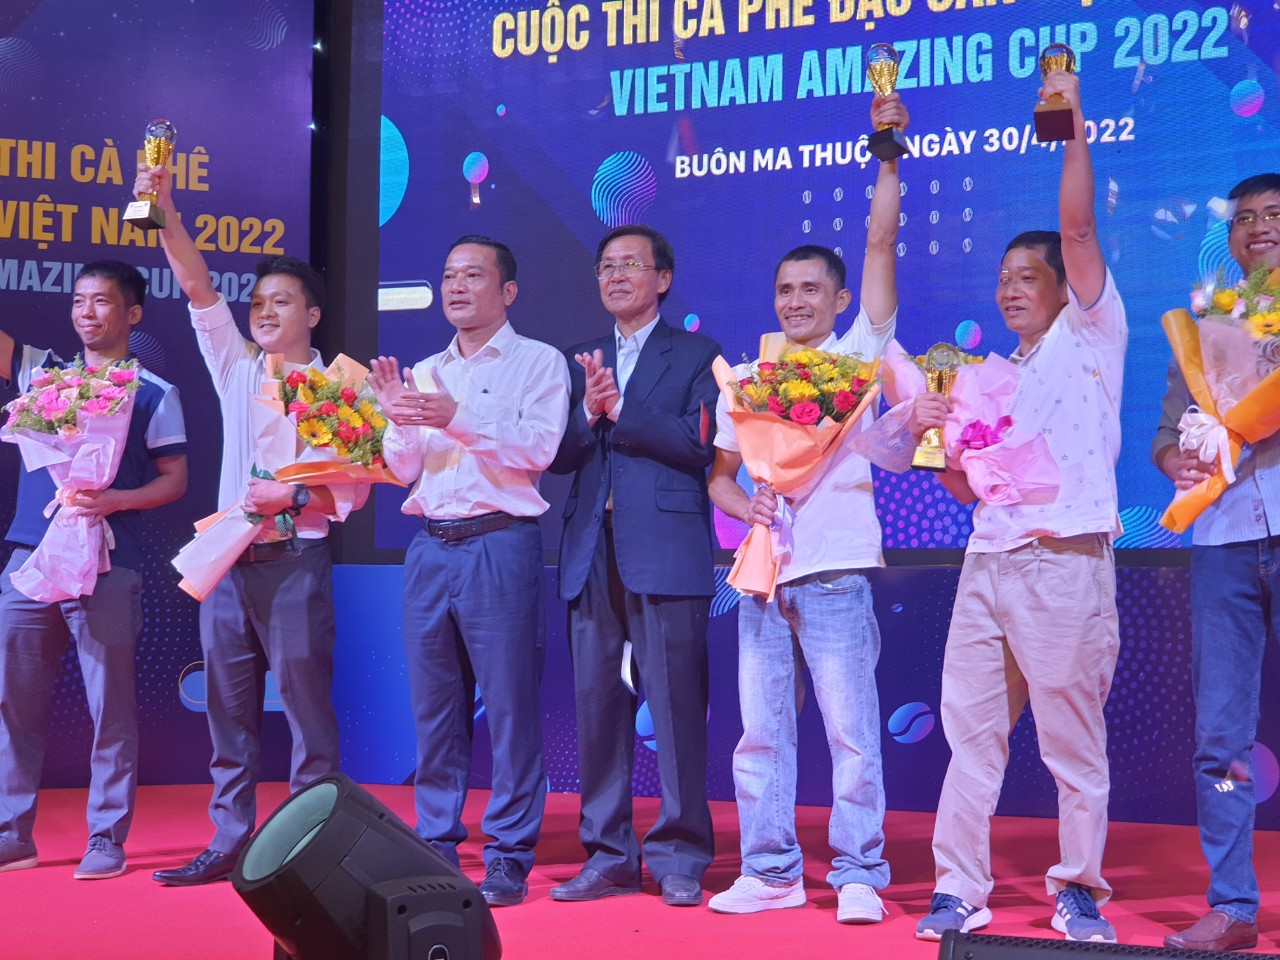 Lễ trao giải thưởng Cà phê đặc sản Việt Nam 2022 (Vietnam Amazing Cup 2022) lần thứ 4 đã diễn ra vào ngày 30-4-2022 tại TP. Buôn Ma Thuột, tỉnh Đắk Lắk